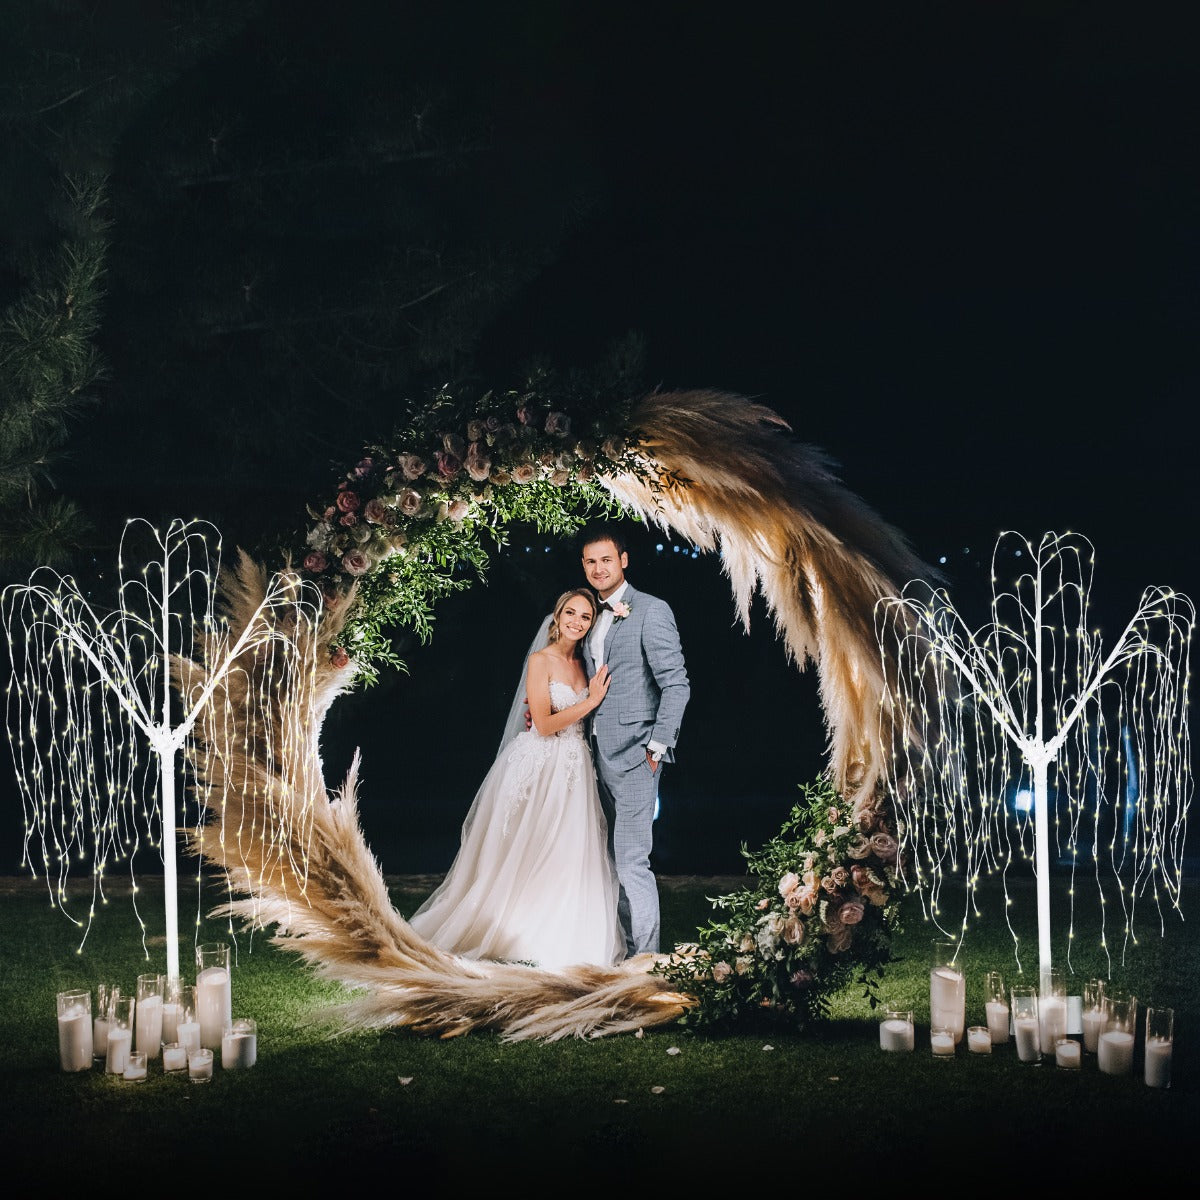 Décoration de Mariage - Combo Arche Circulaire Dorée & 2 Saules Pleureur Lumineux 180cm Blanc Chaud